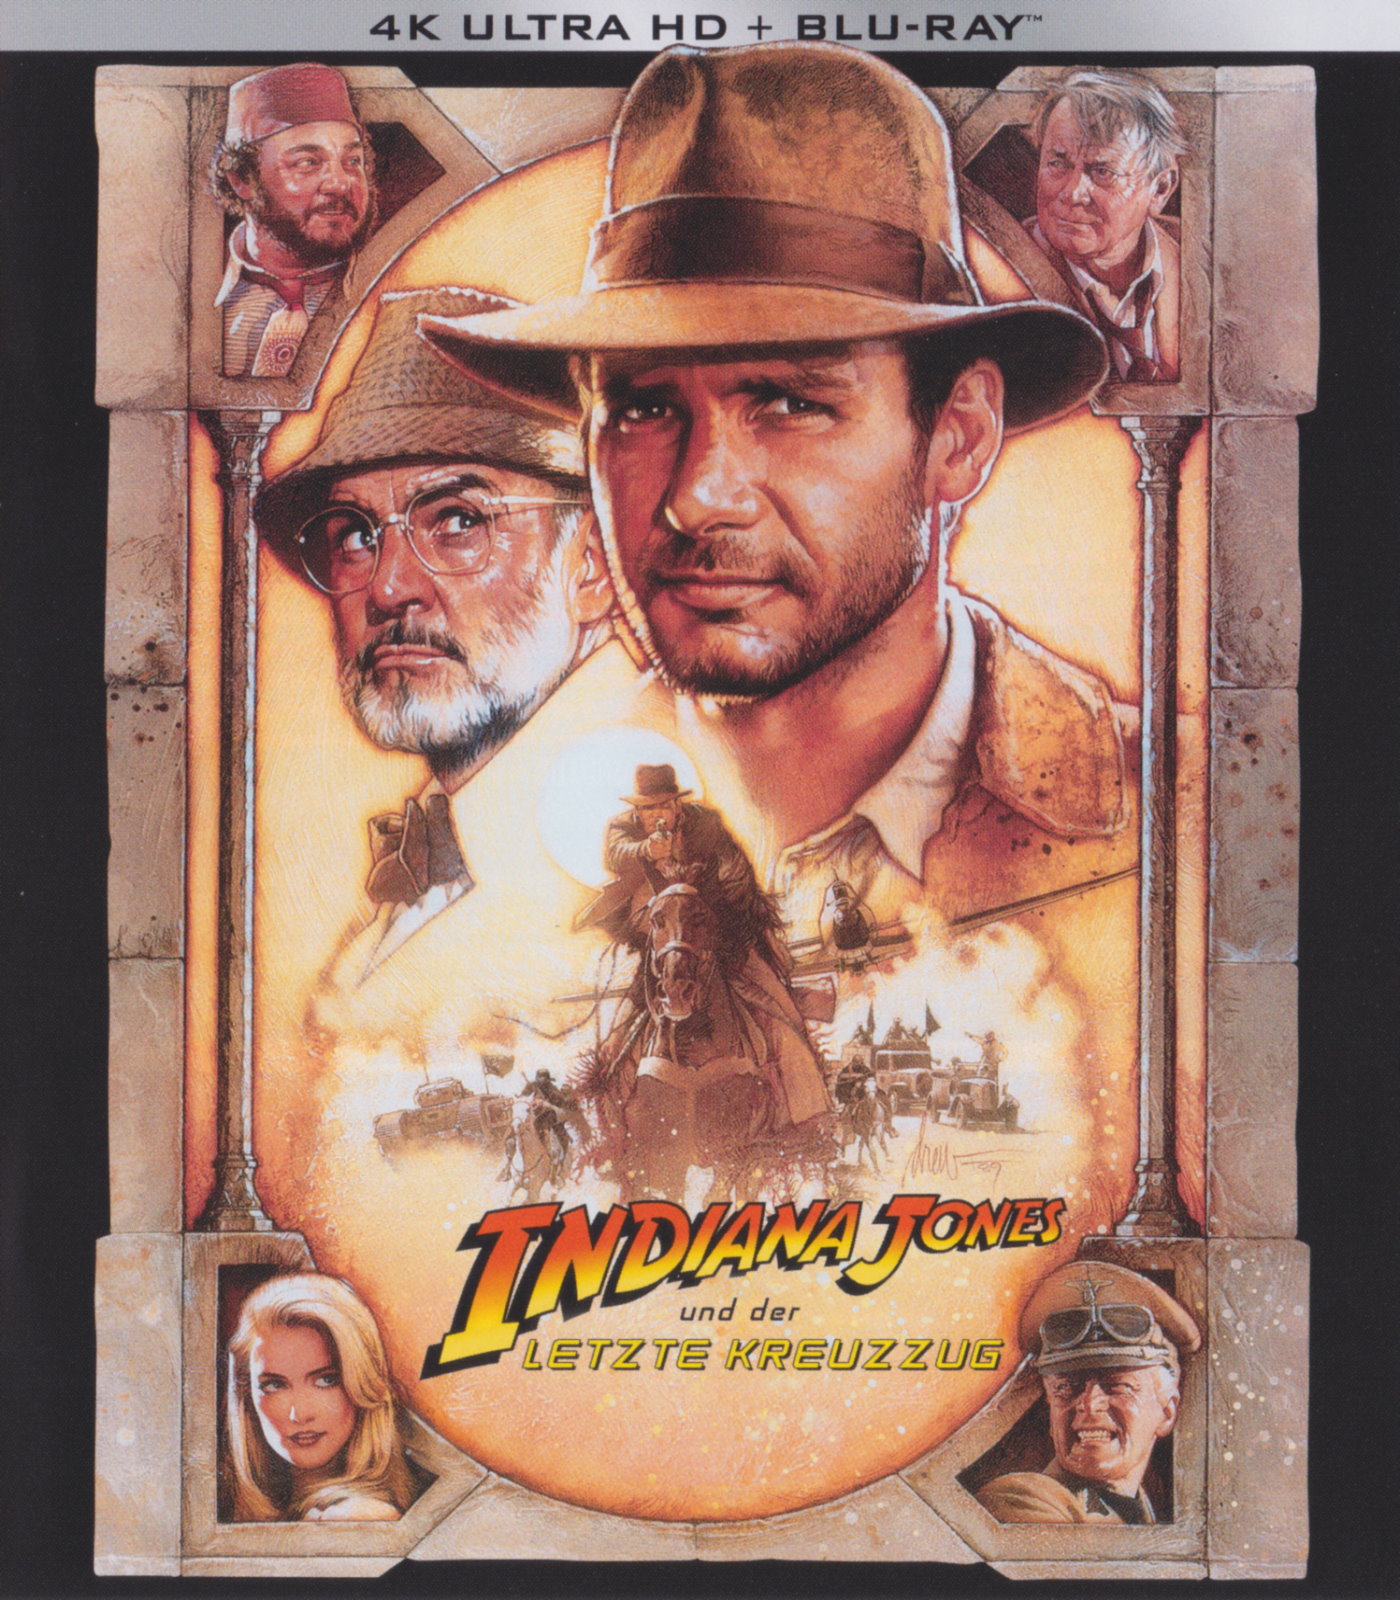 Cover - Indiana Jones und der letzte Kreuzzug.jpg